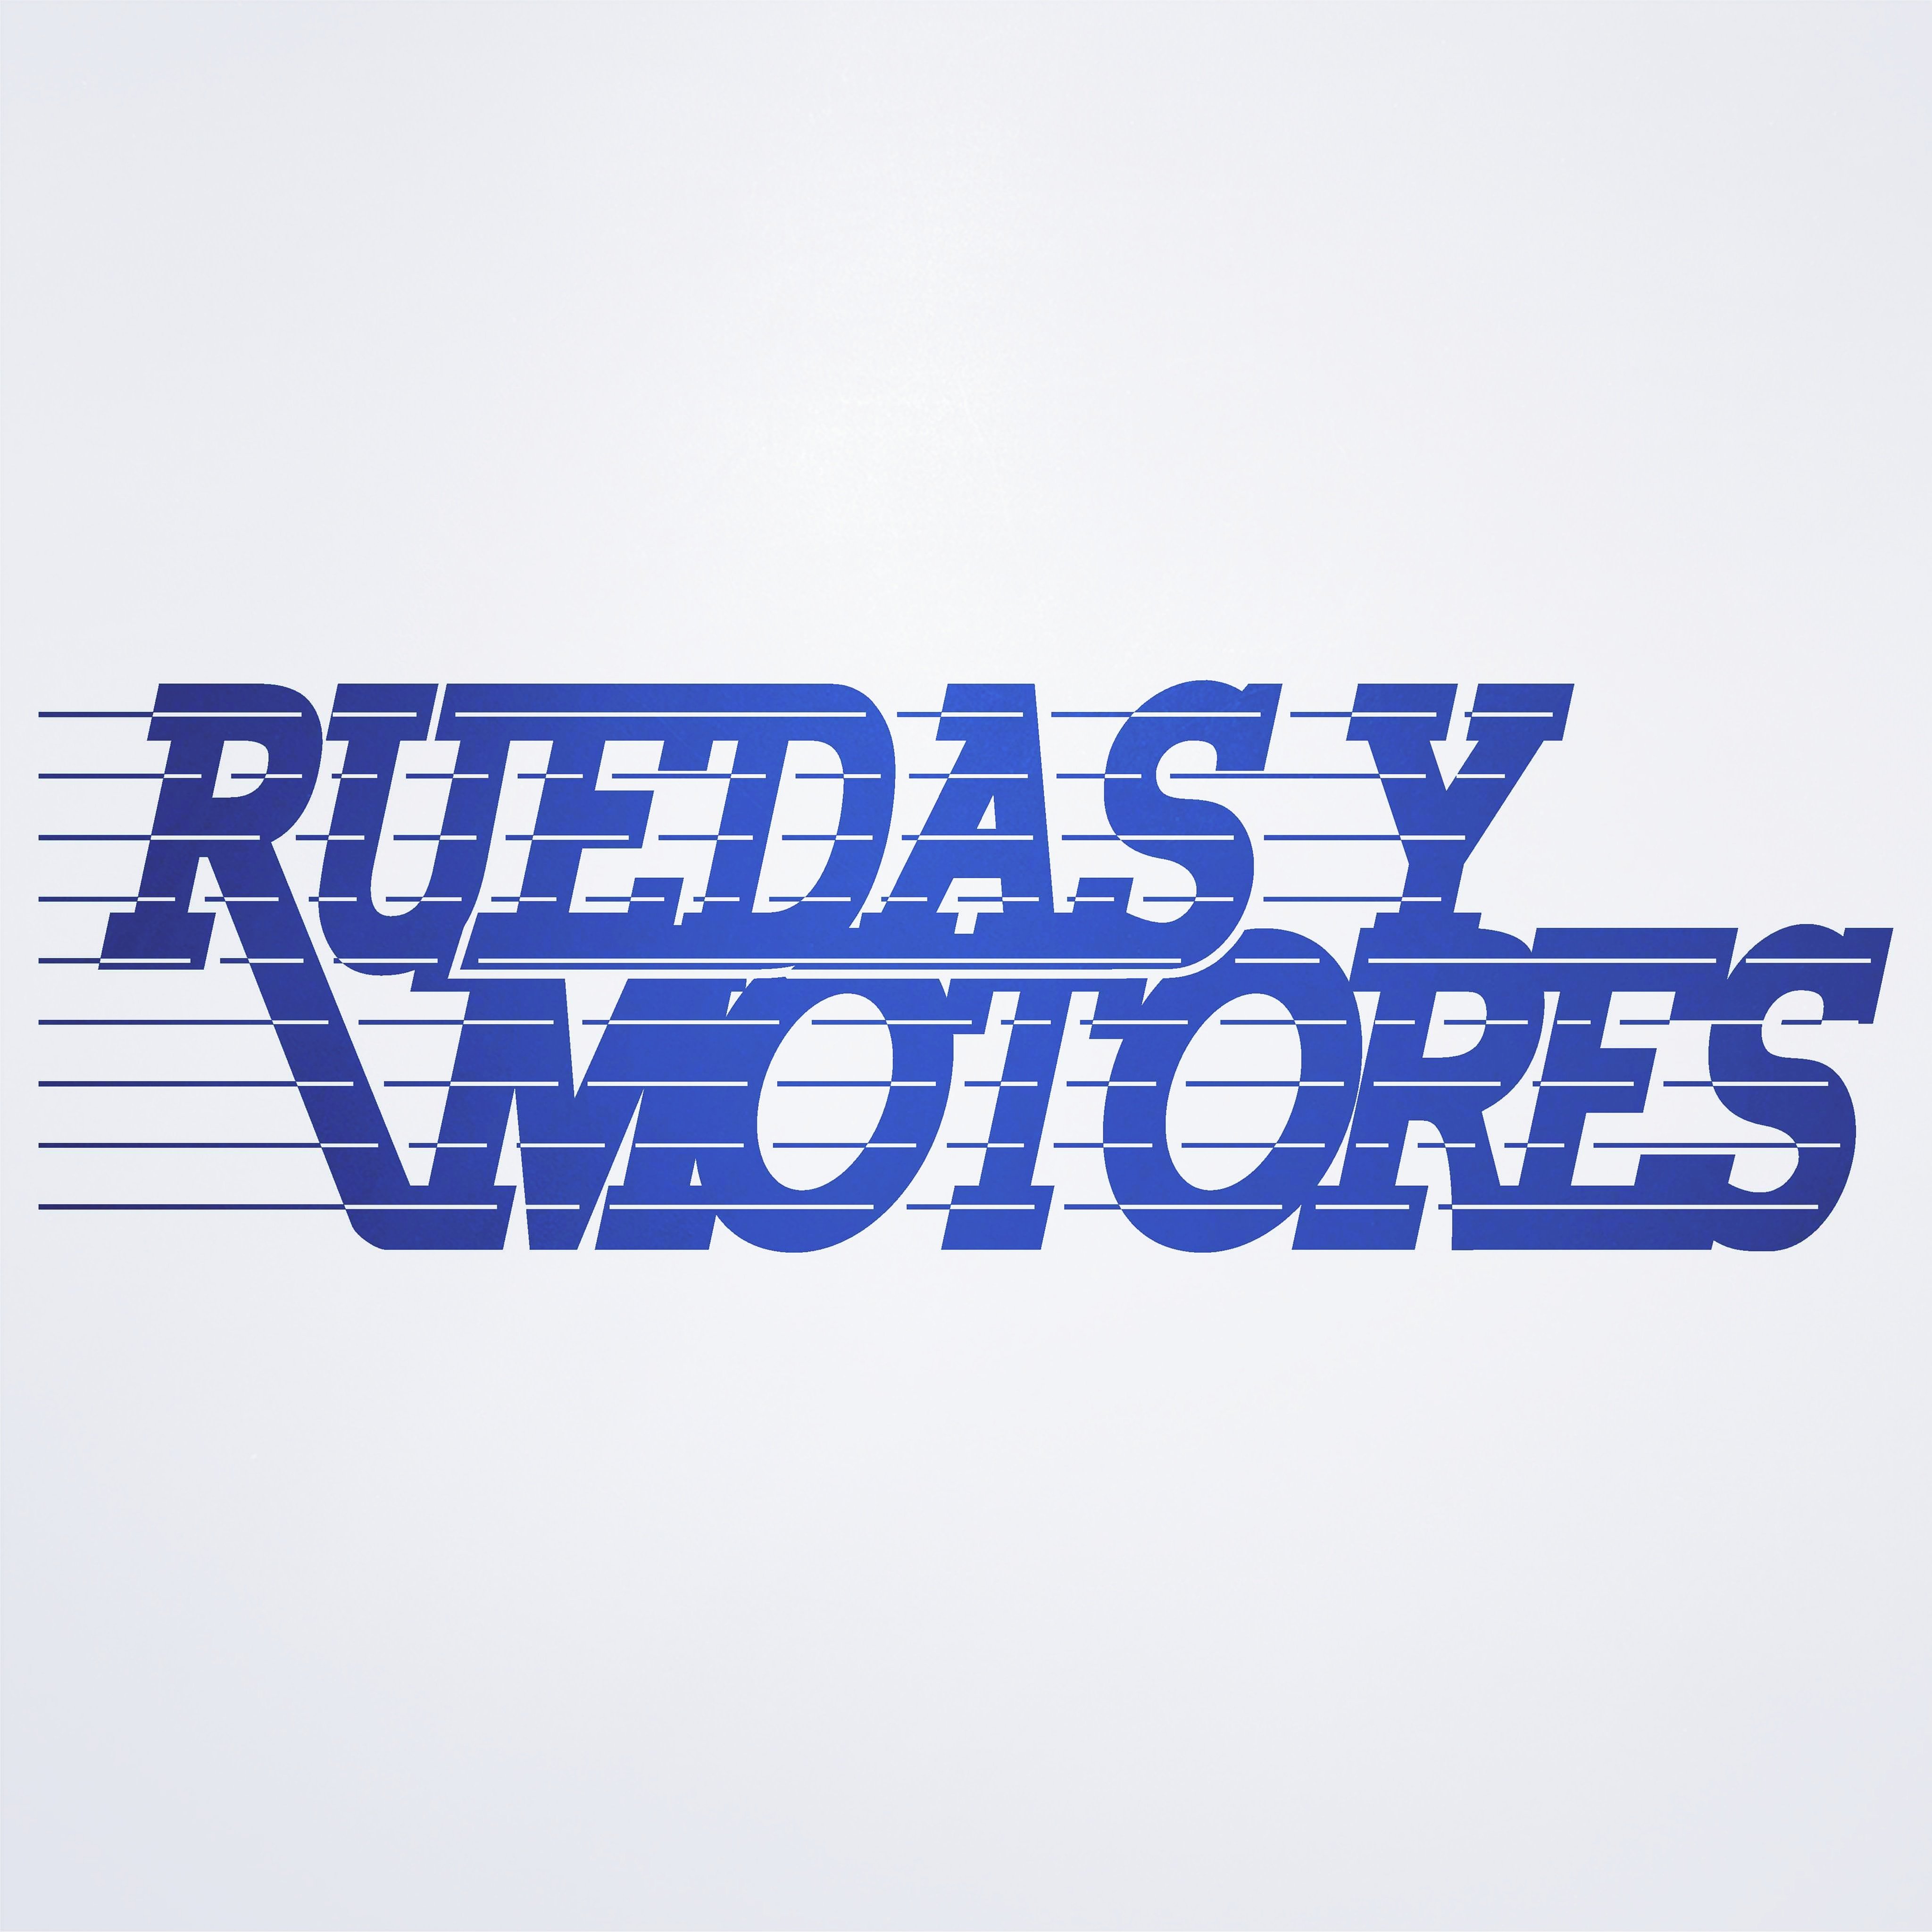 Ruedas y Motores es un espacio dedicado al automovilismo de San Luis y las transmisiones radiales del Rally Argentino y Rally Puntano.